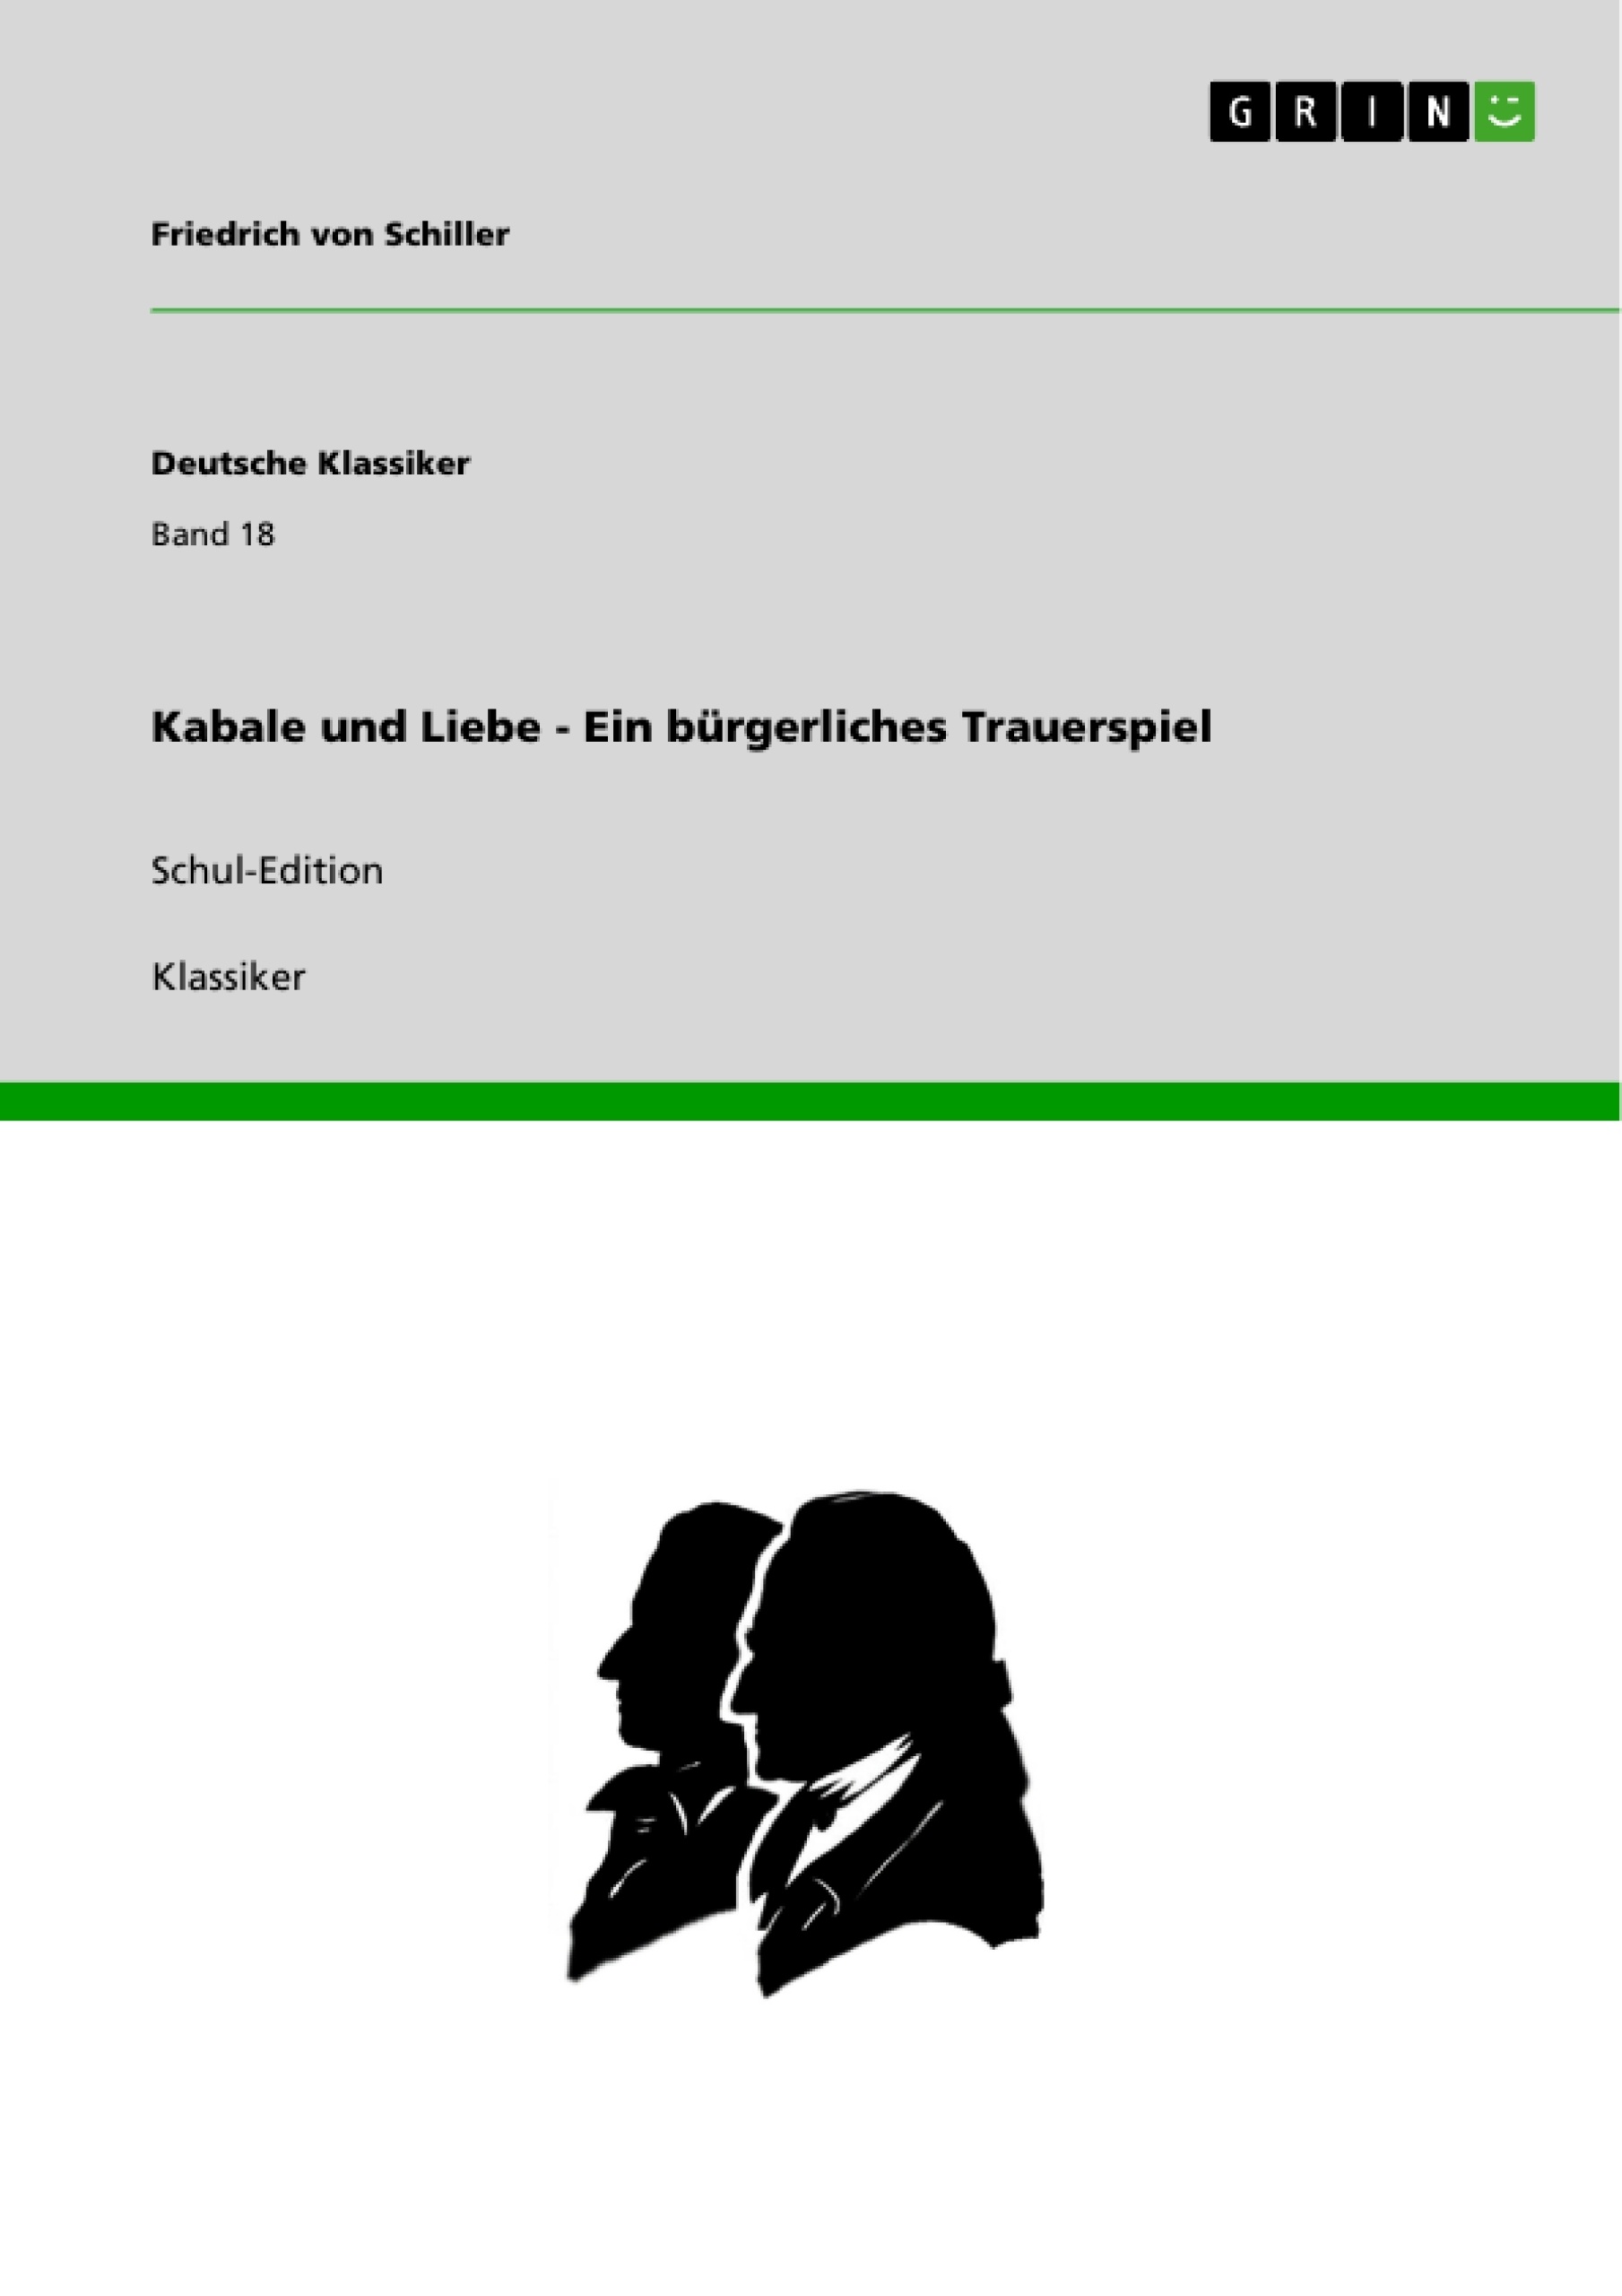 Title: Kabale und Liebe - Ein bürgerliches Trauerspiel